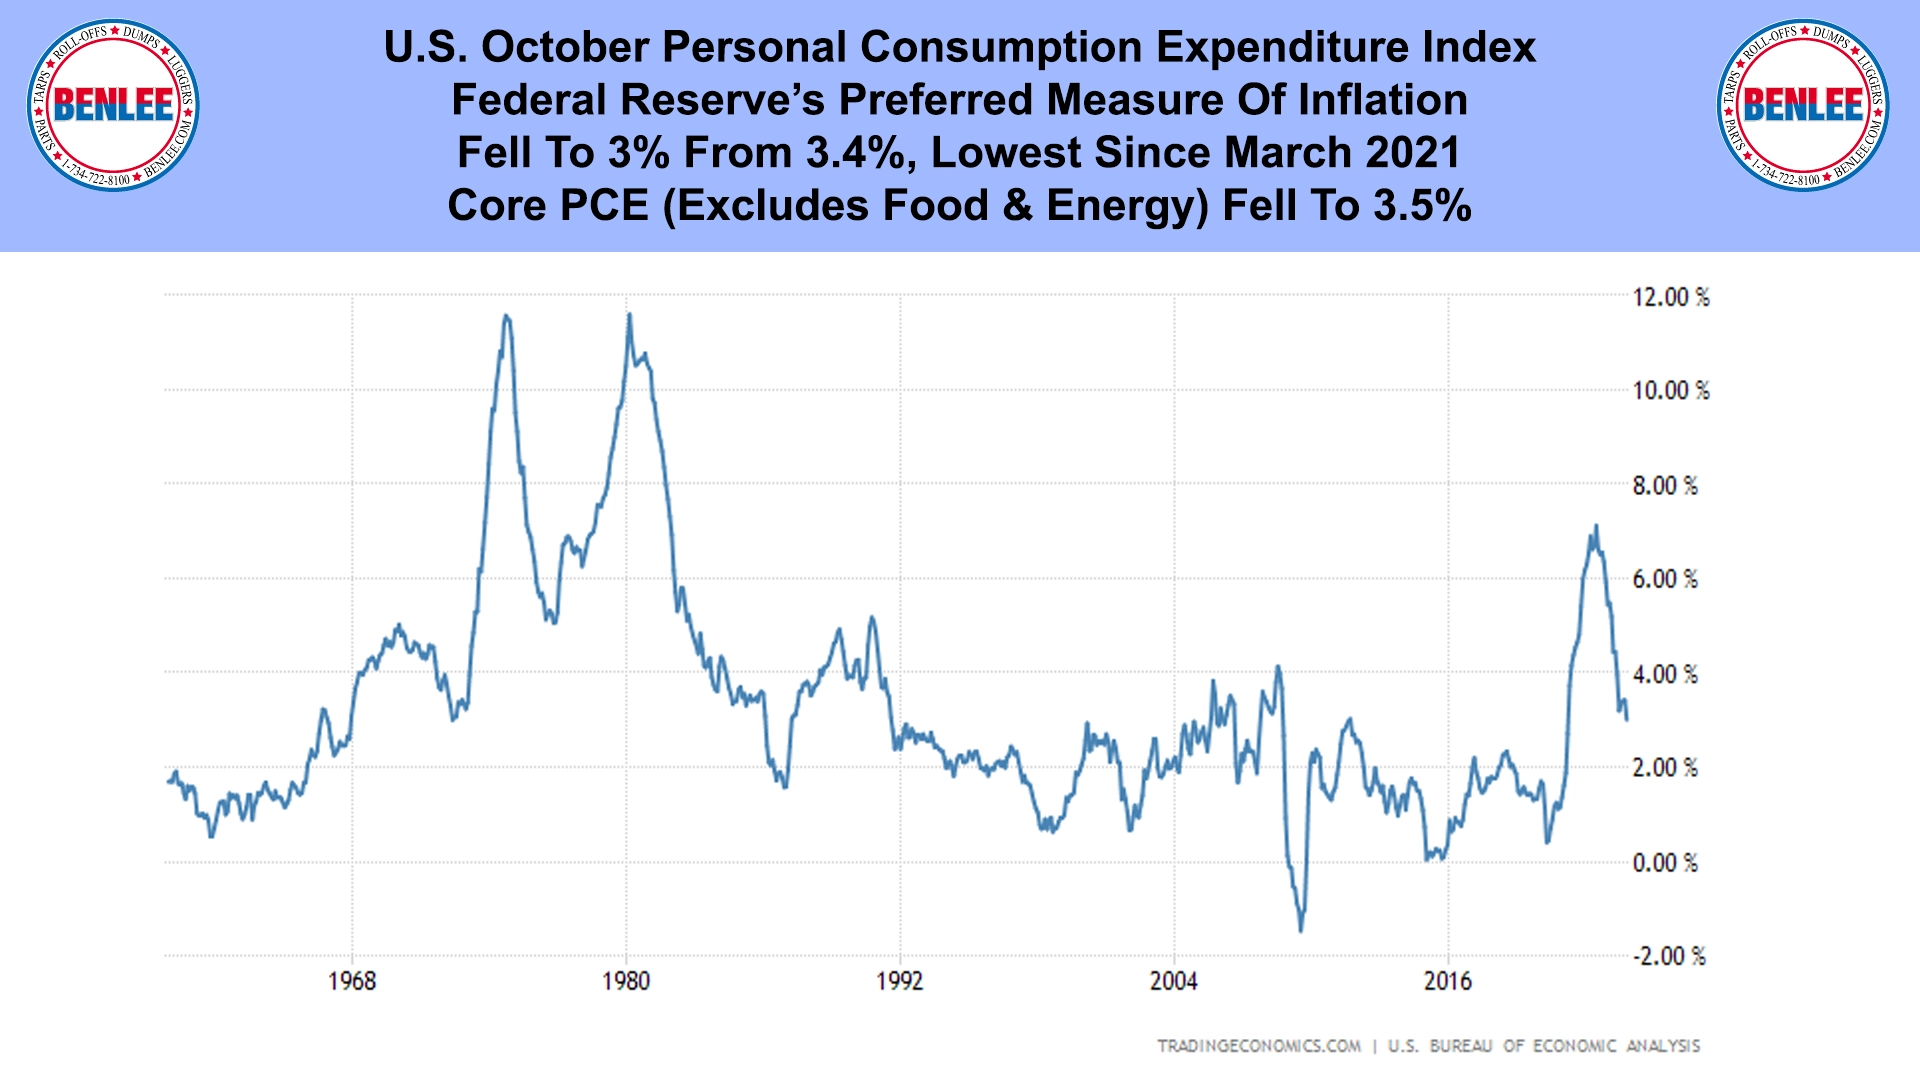 U.S. October Personal Consumption Expenditure Index